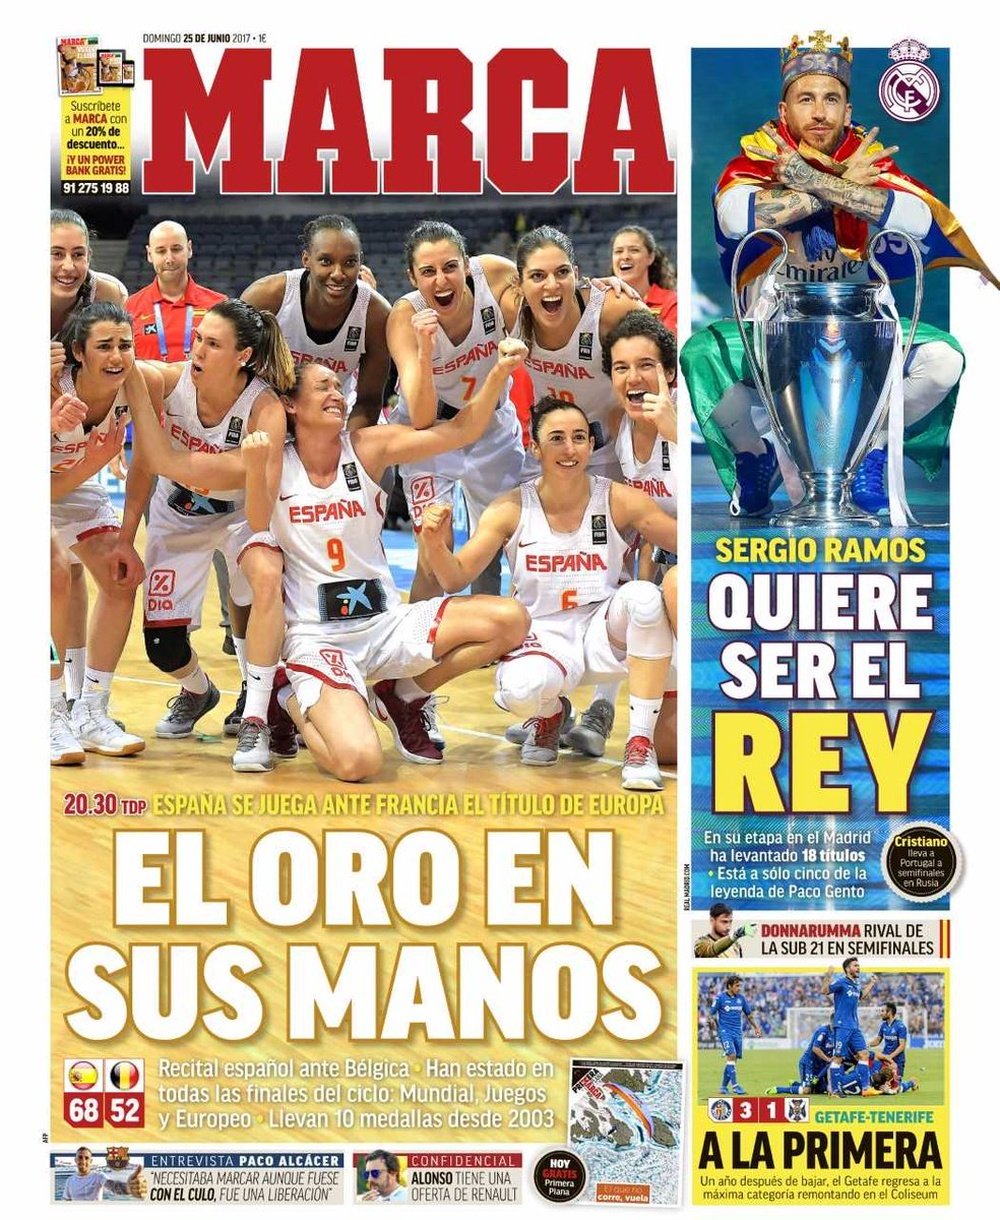 La Une du quotidien sportif espagnol 'Marca' du 25-06-17. Marca